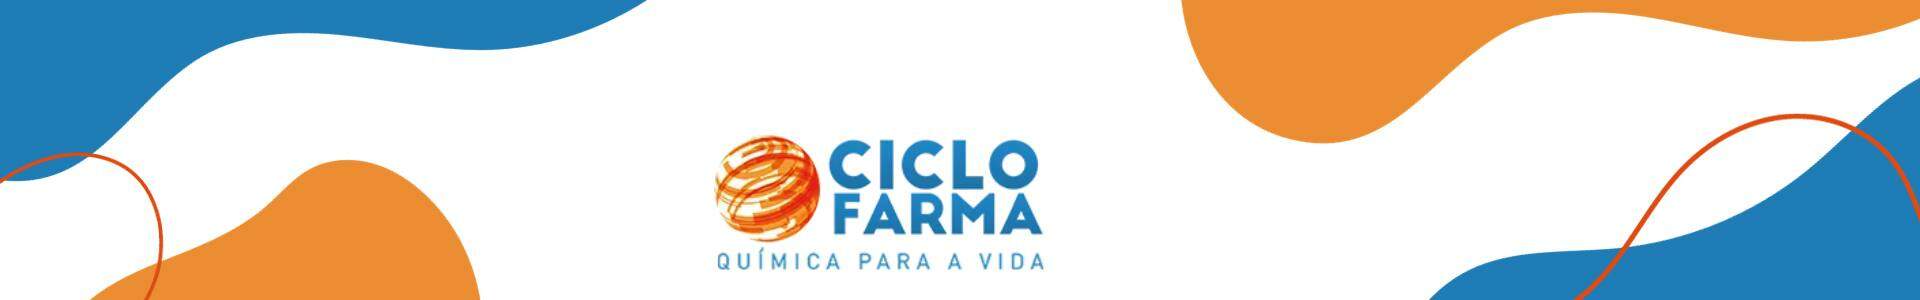 Marca Ciclo Farma